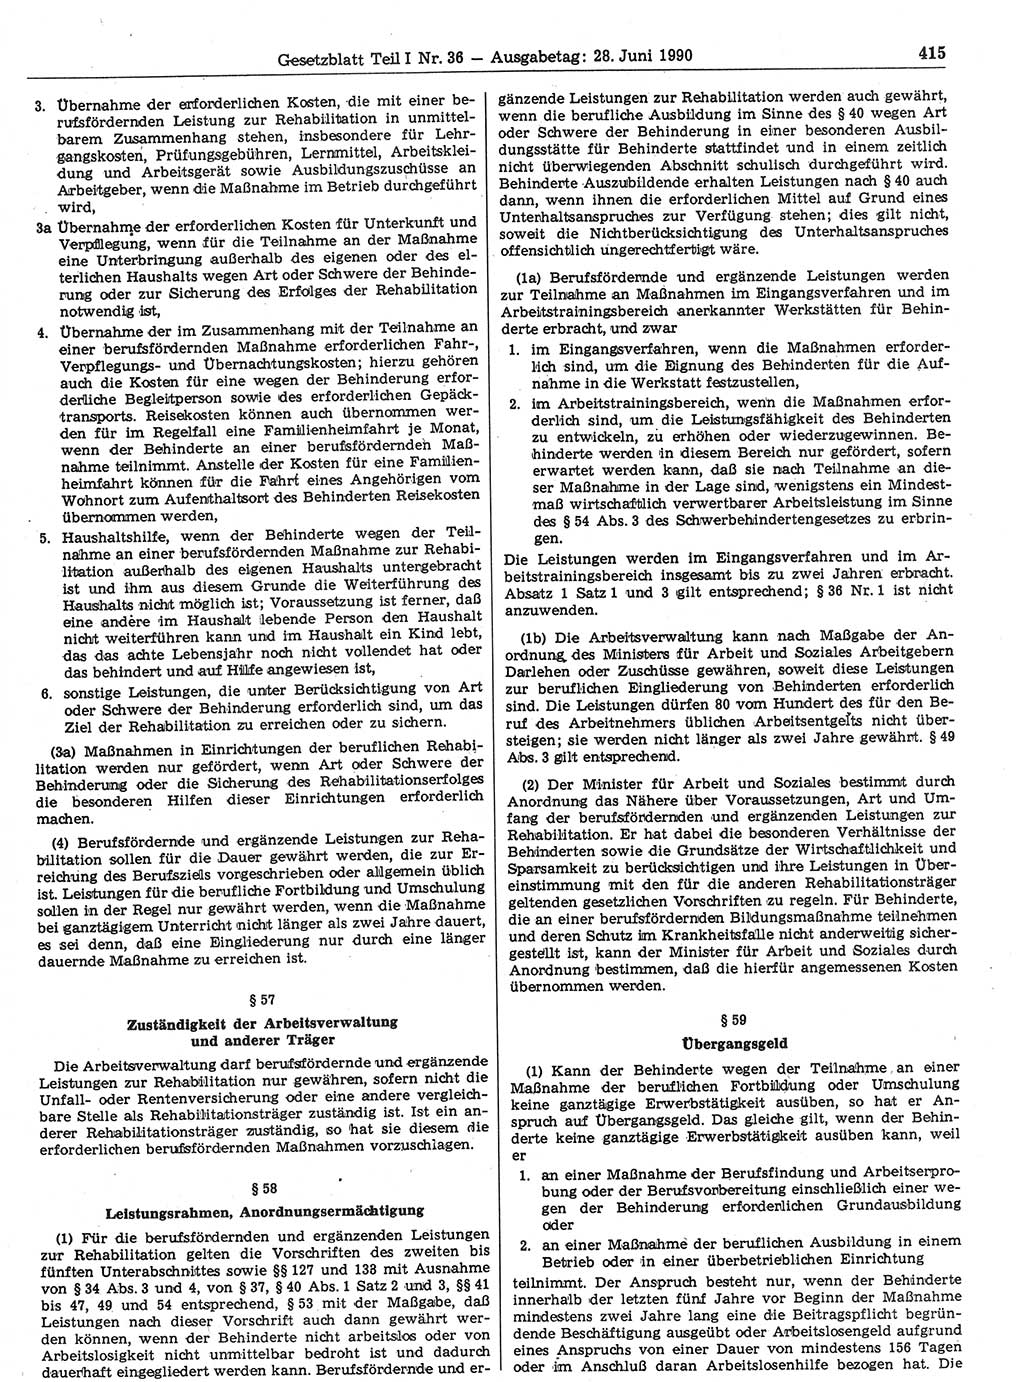 Gesetzblatt (GBl.) der Deutschen Demokratischen Republik (DDR) Teil Ⅰ 1990, Seite 415 (GBl. DDR Ⅰ 1990, S. 415)